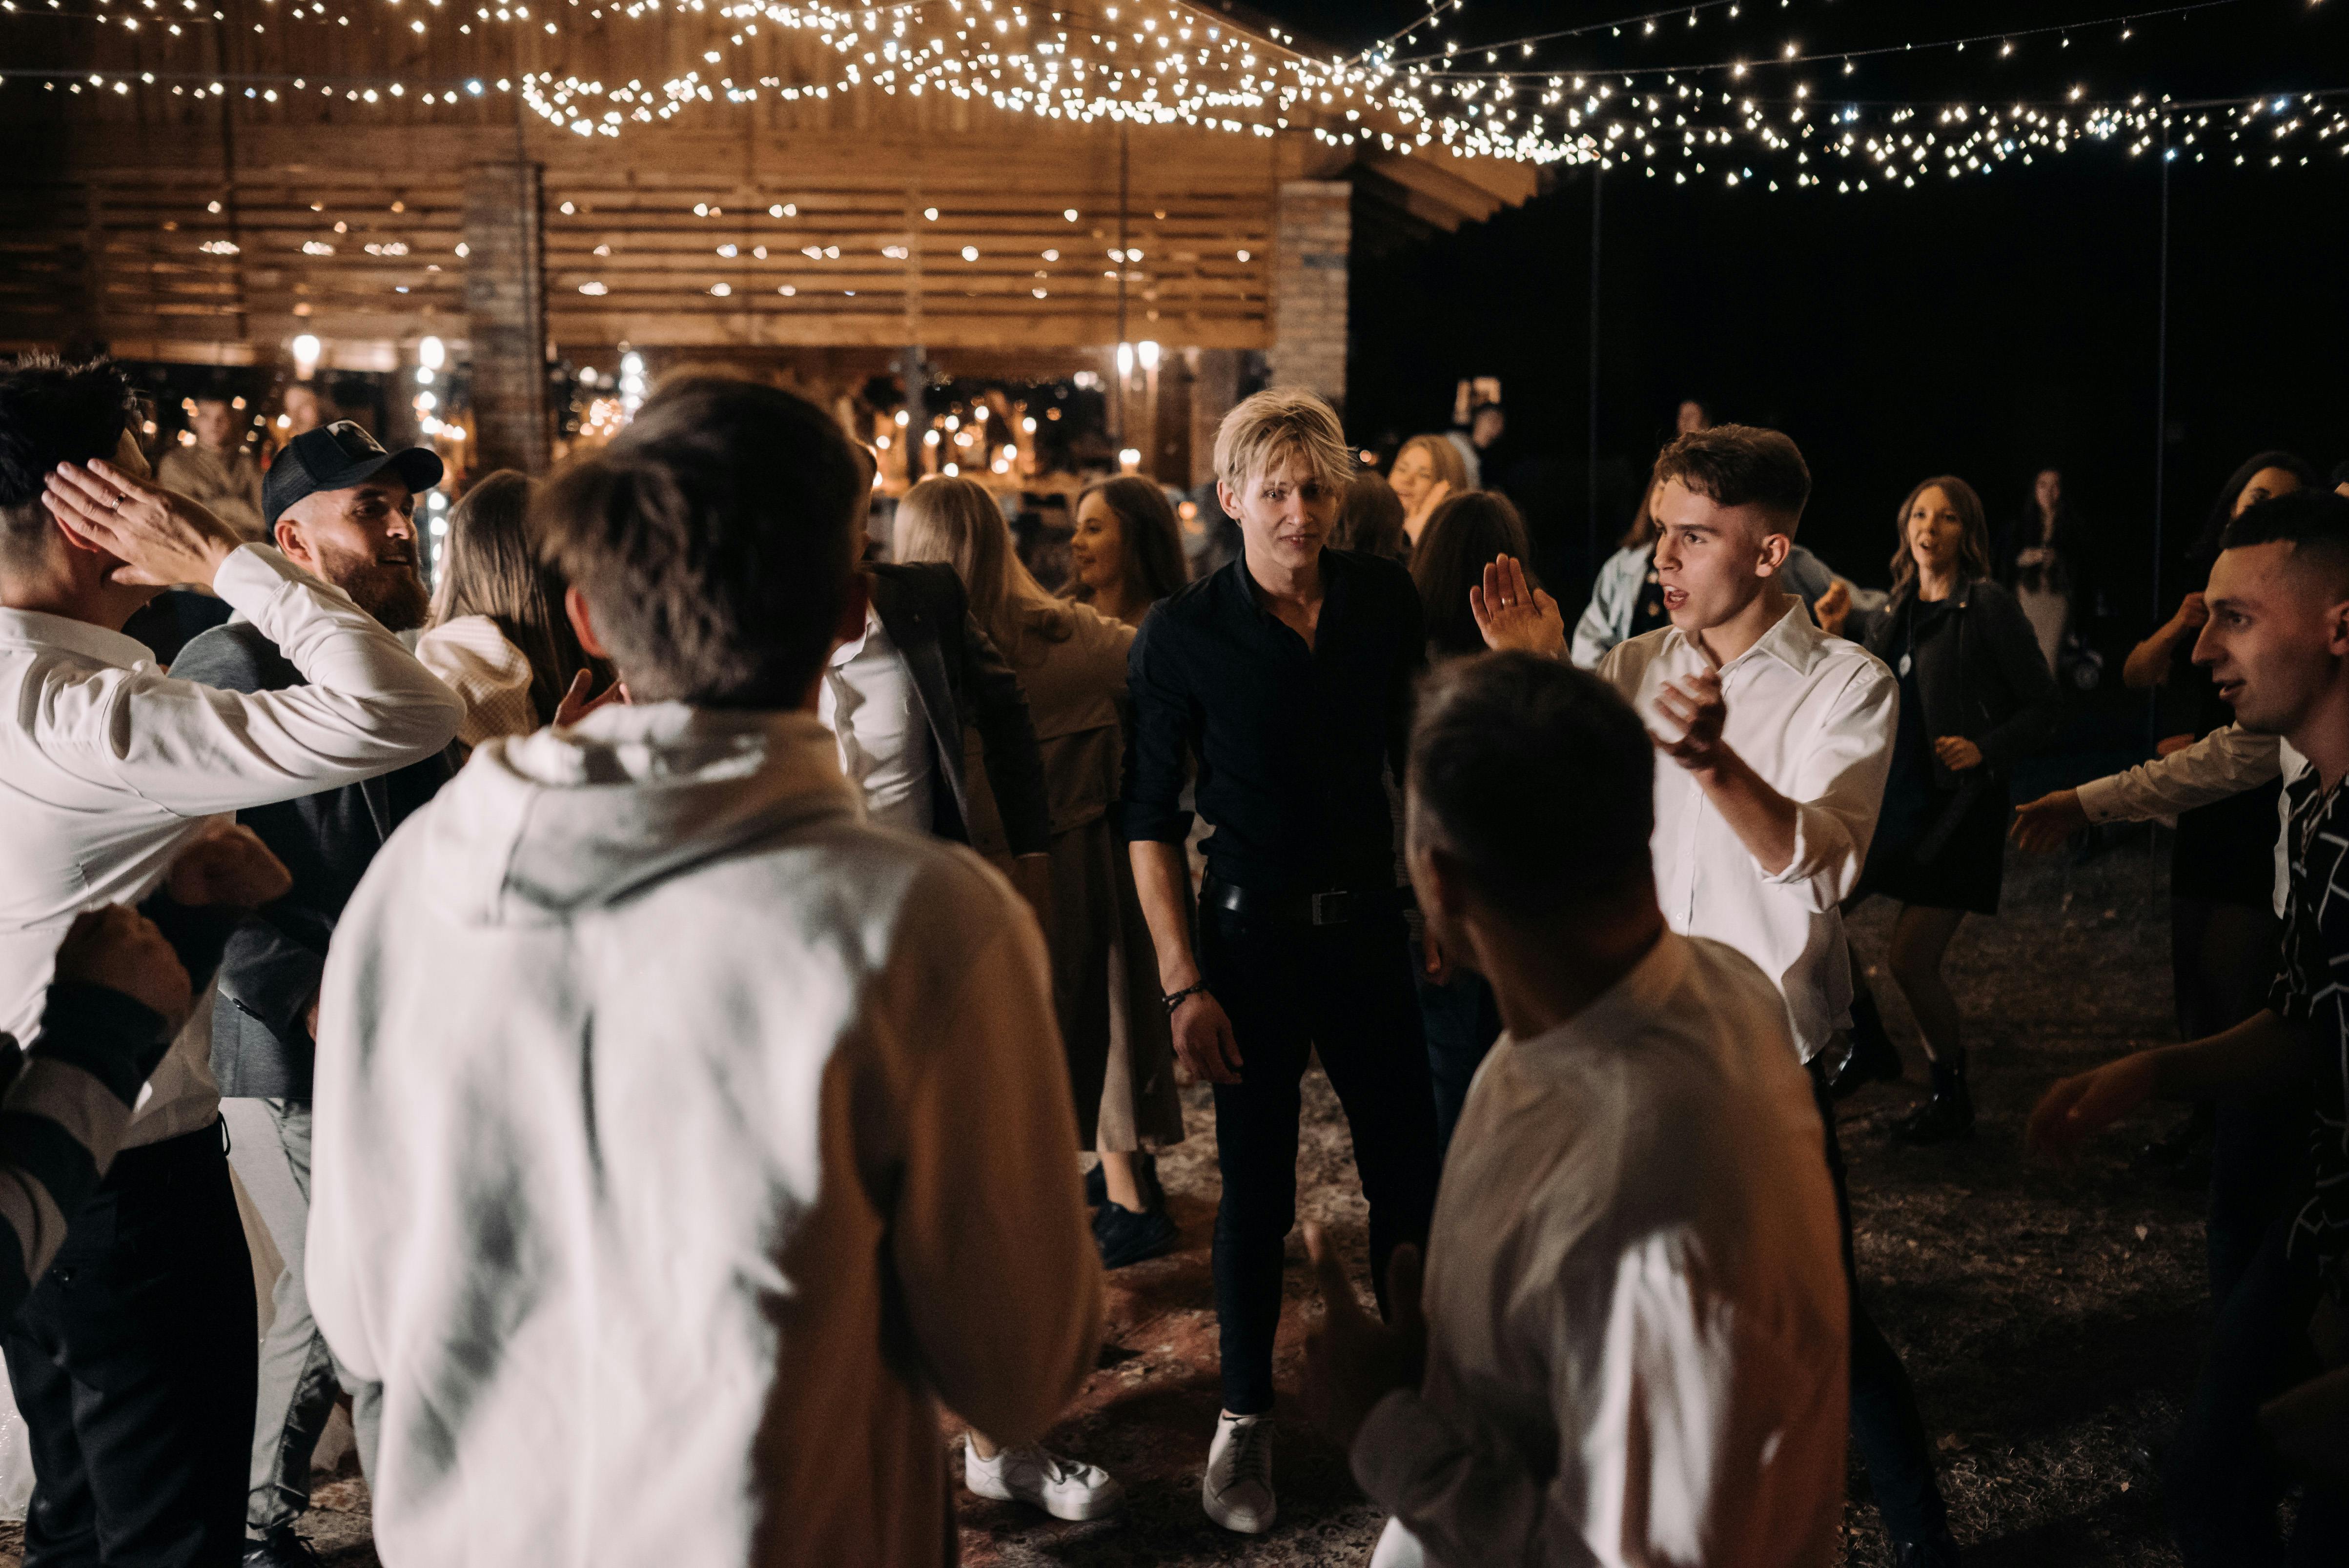 Tanzende Menschen auf einer Hochzeit | Quelle: Pexels